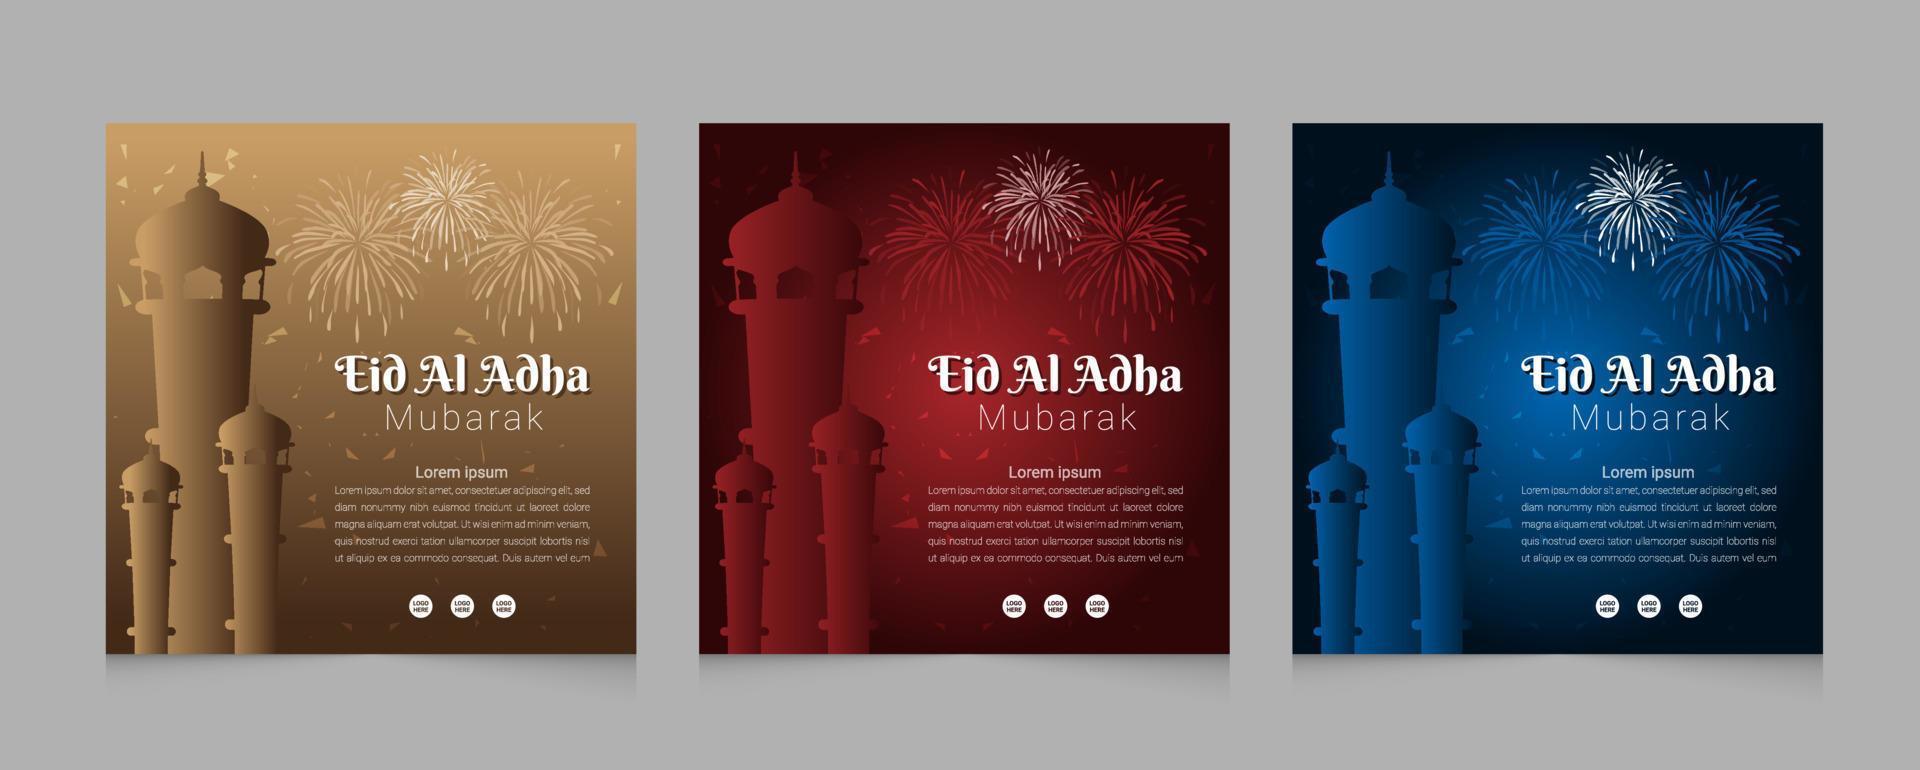 Eid Al Adha social media post web template design set vector